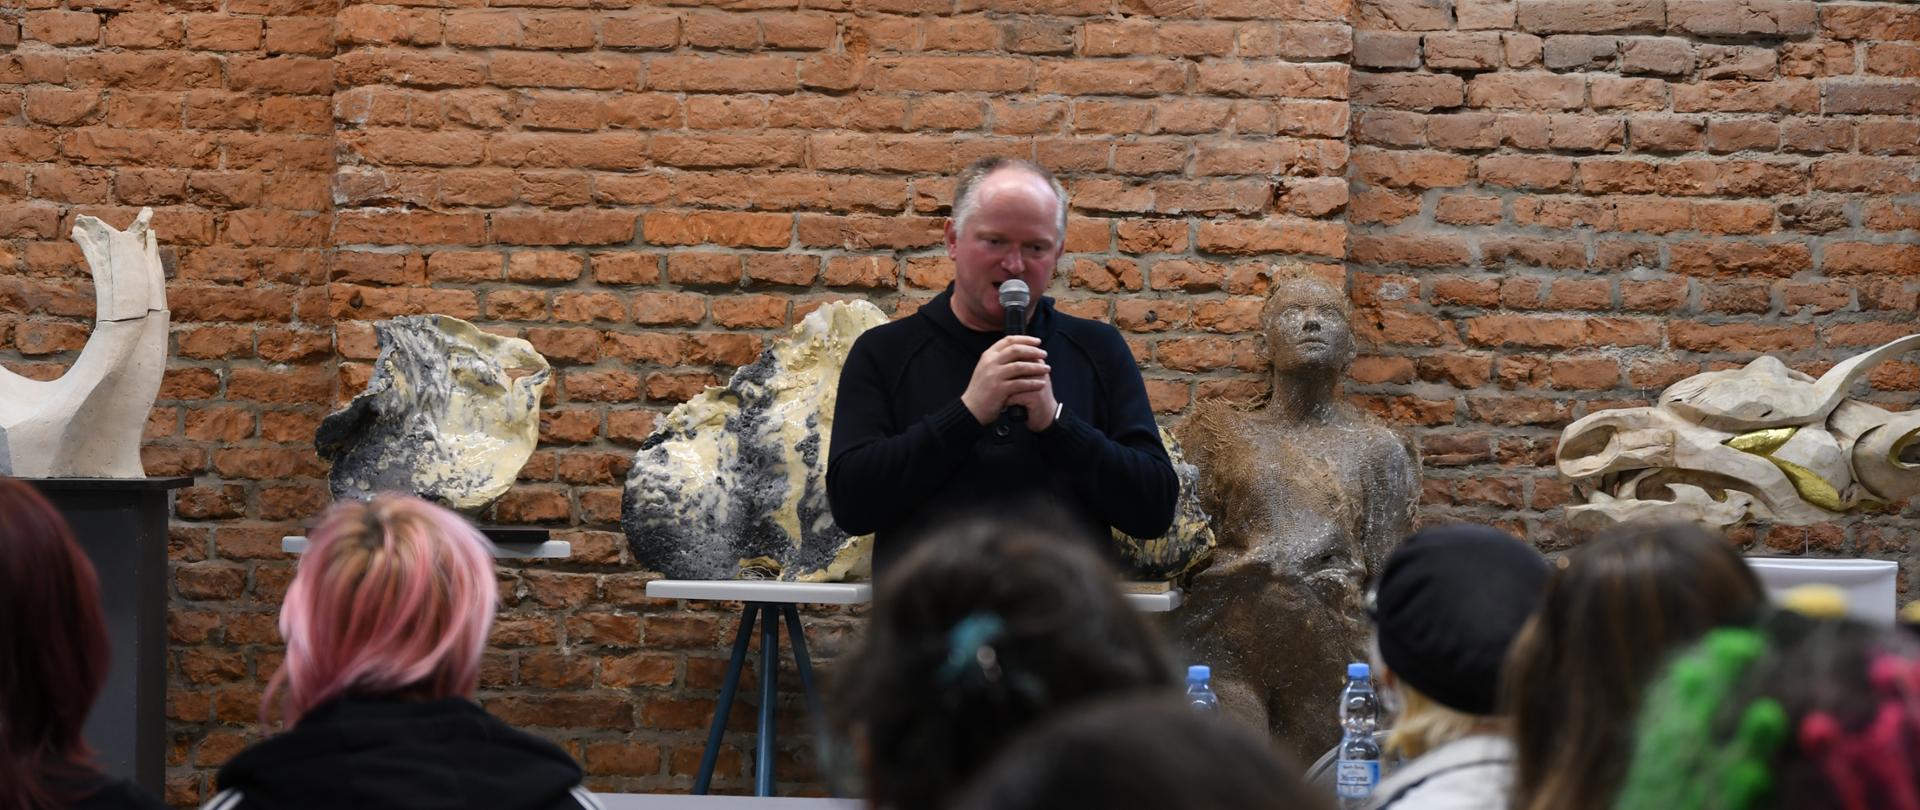 Mężczyzna przemawiający do mikrofonu przed publicznością, w tle rzeźby i ceglana ściana